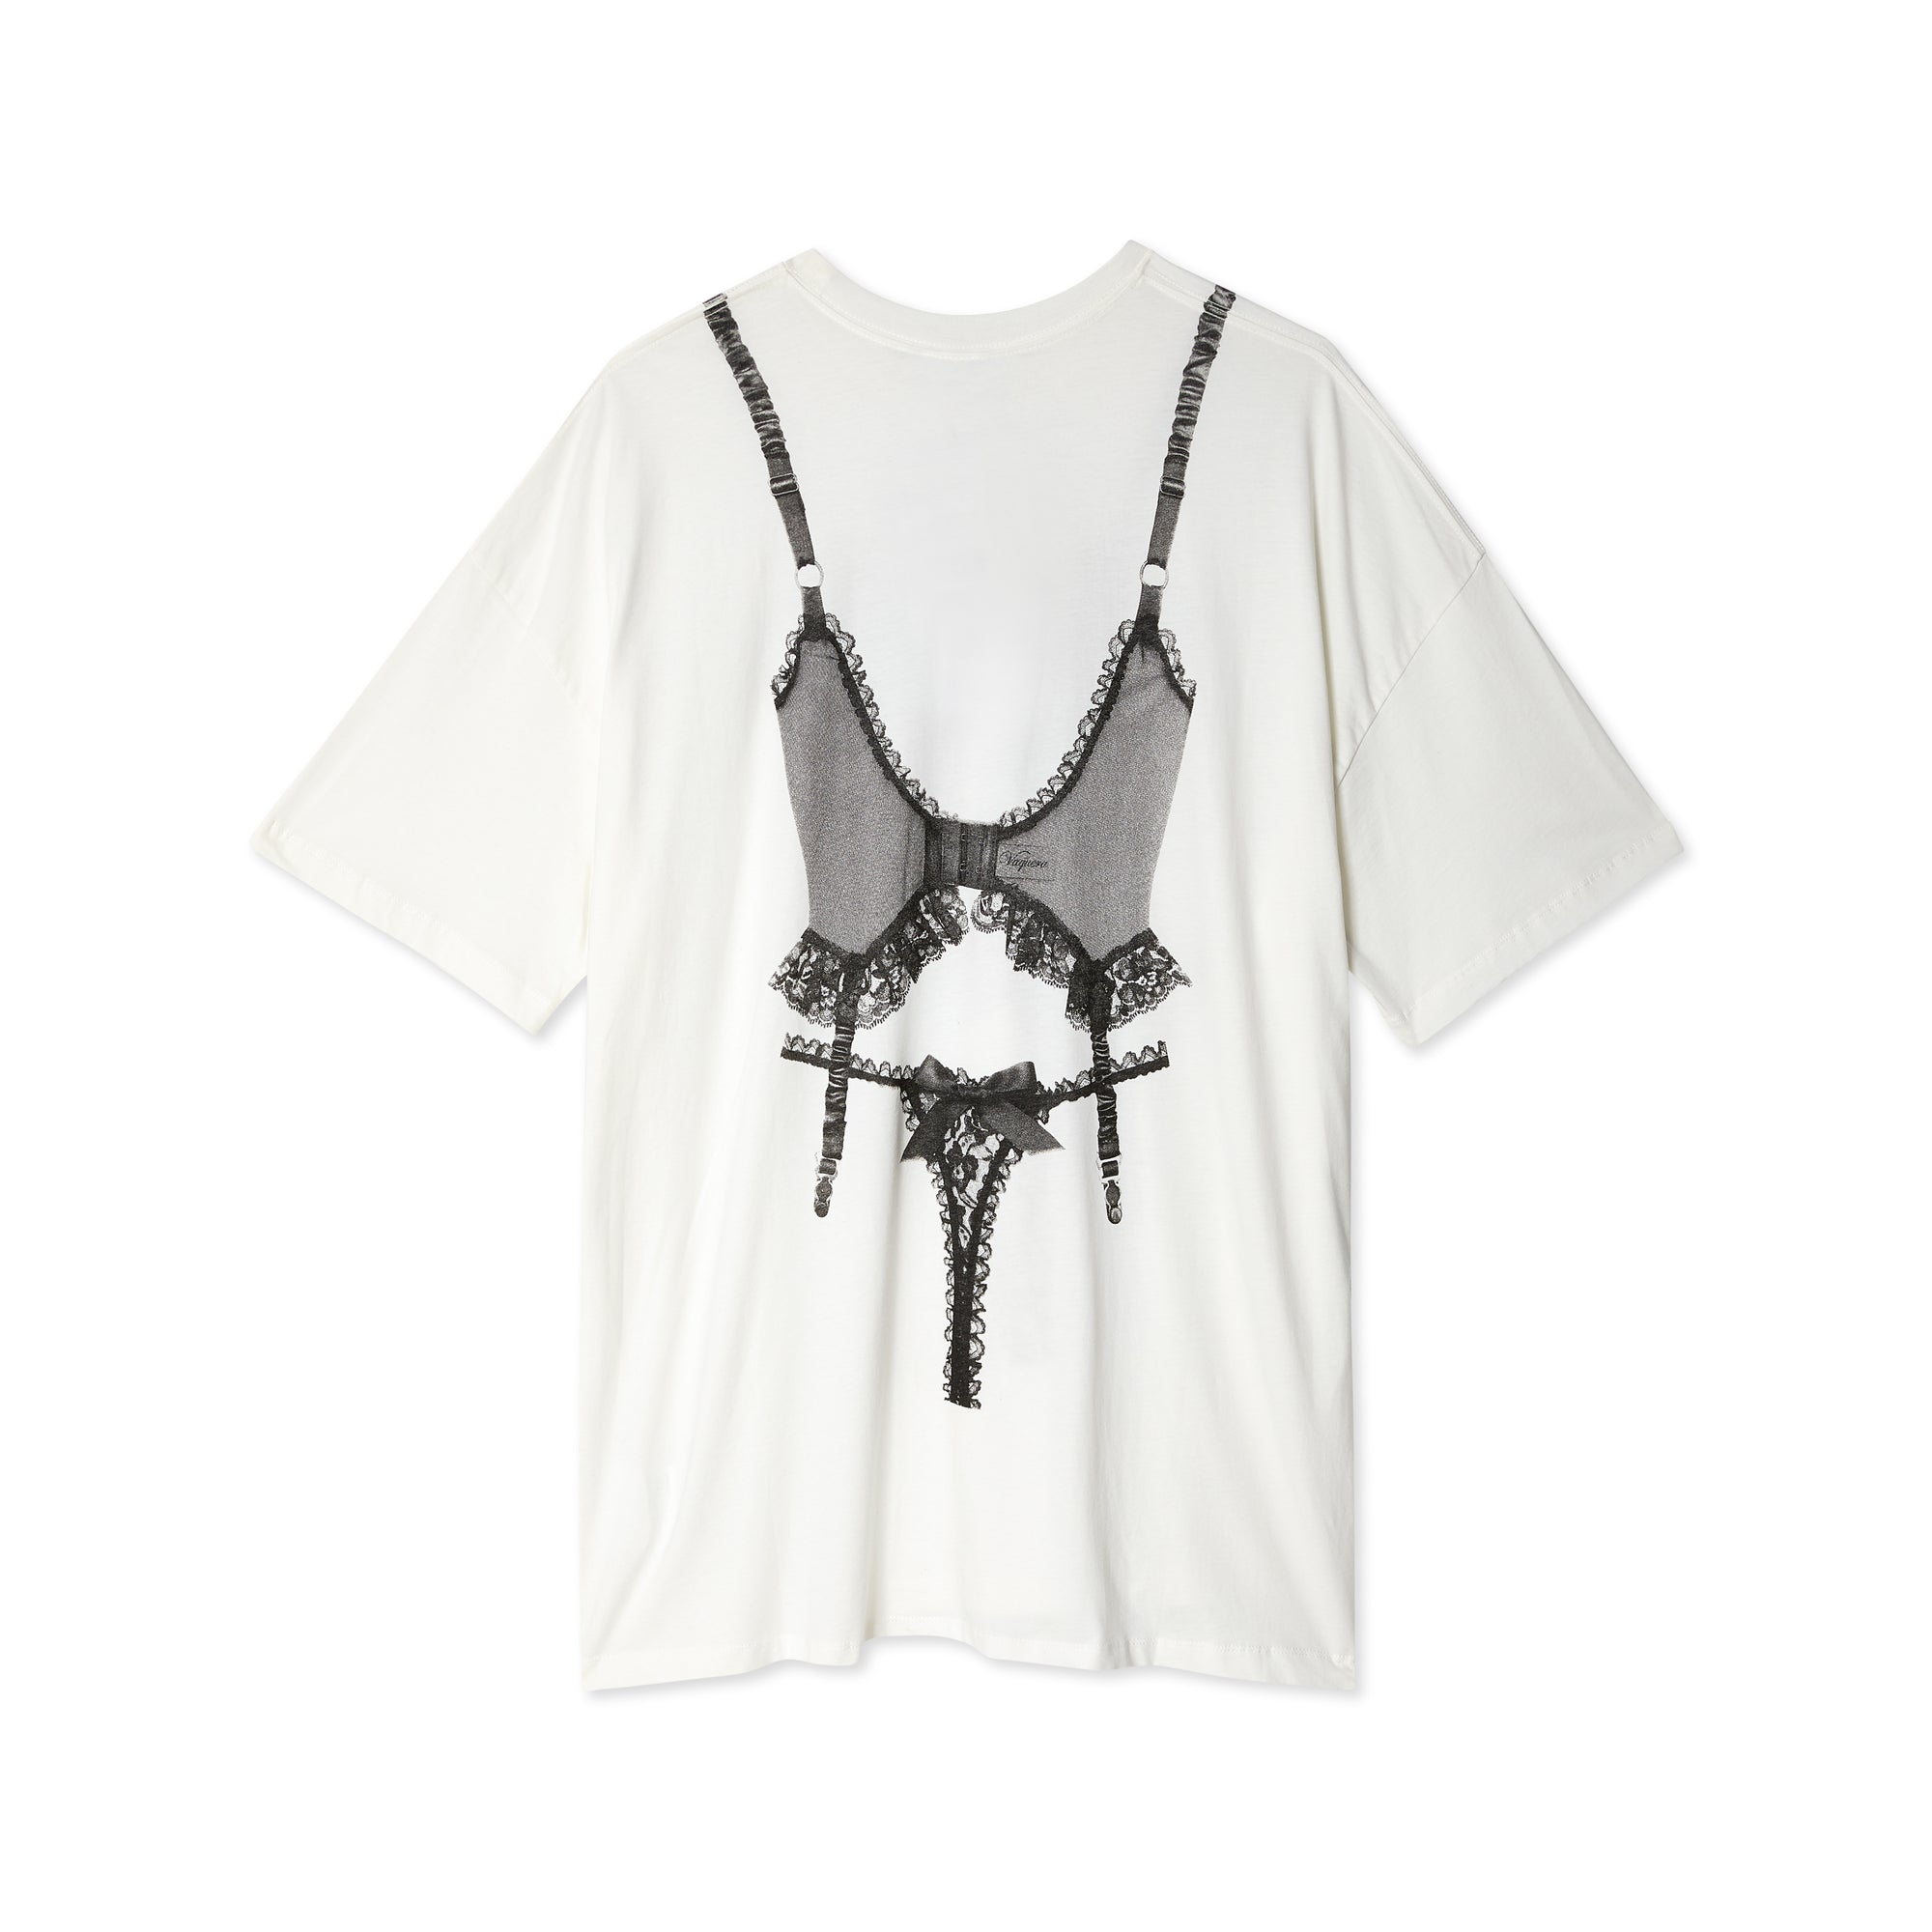 Samantha T-Shirt Bra in Dream White – Changewear